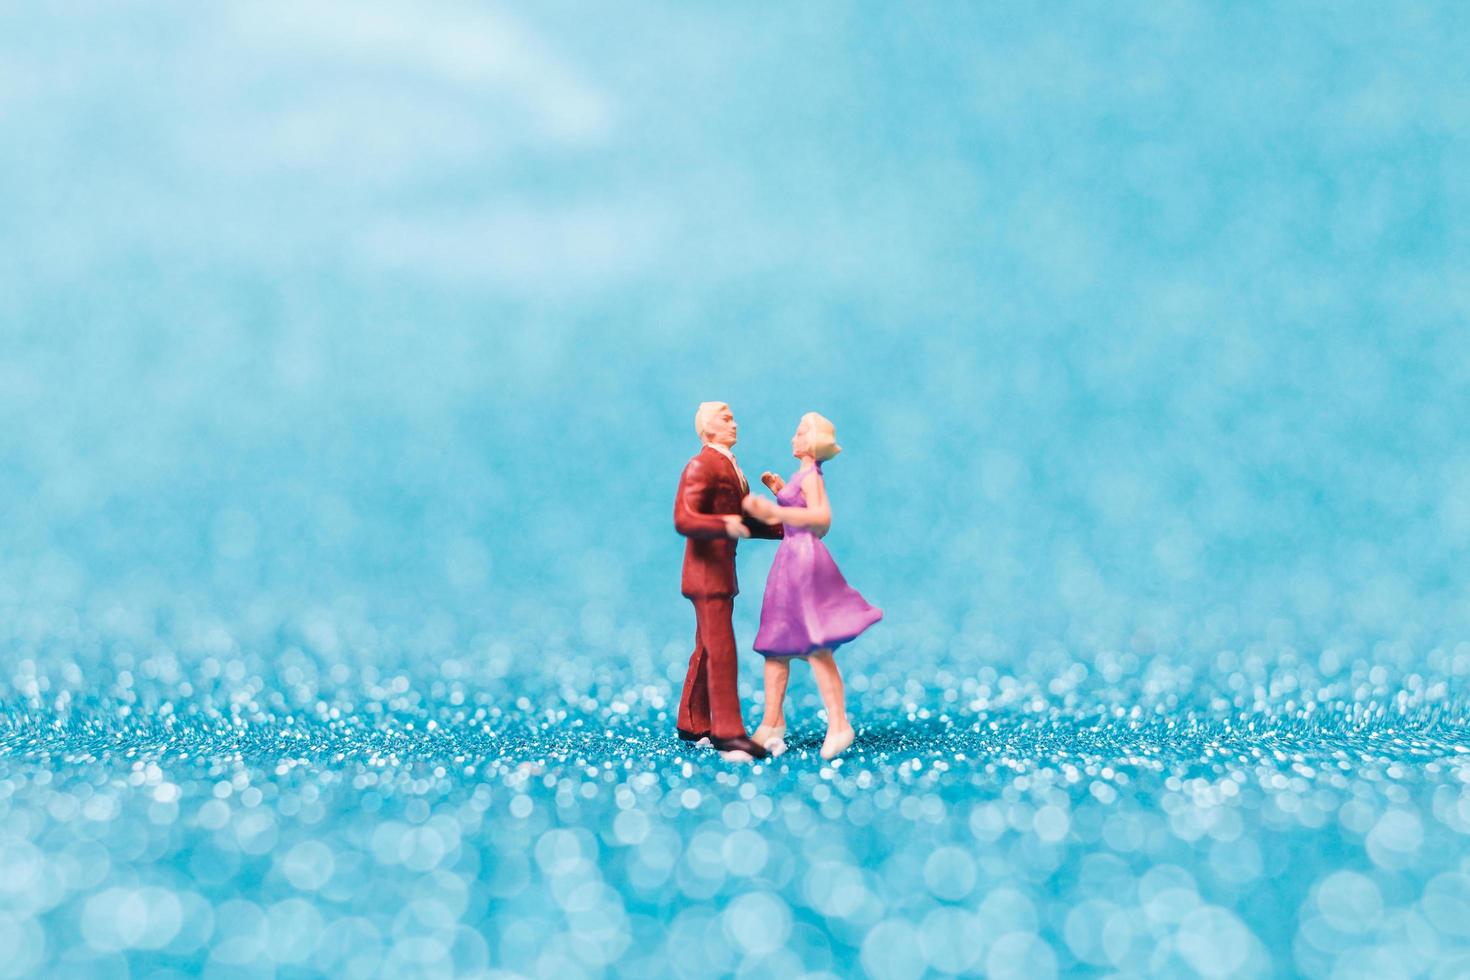 casal em miniatura dançando sobre fundo azul brilhante, conceito do dia dos namorados foto